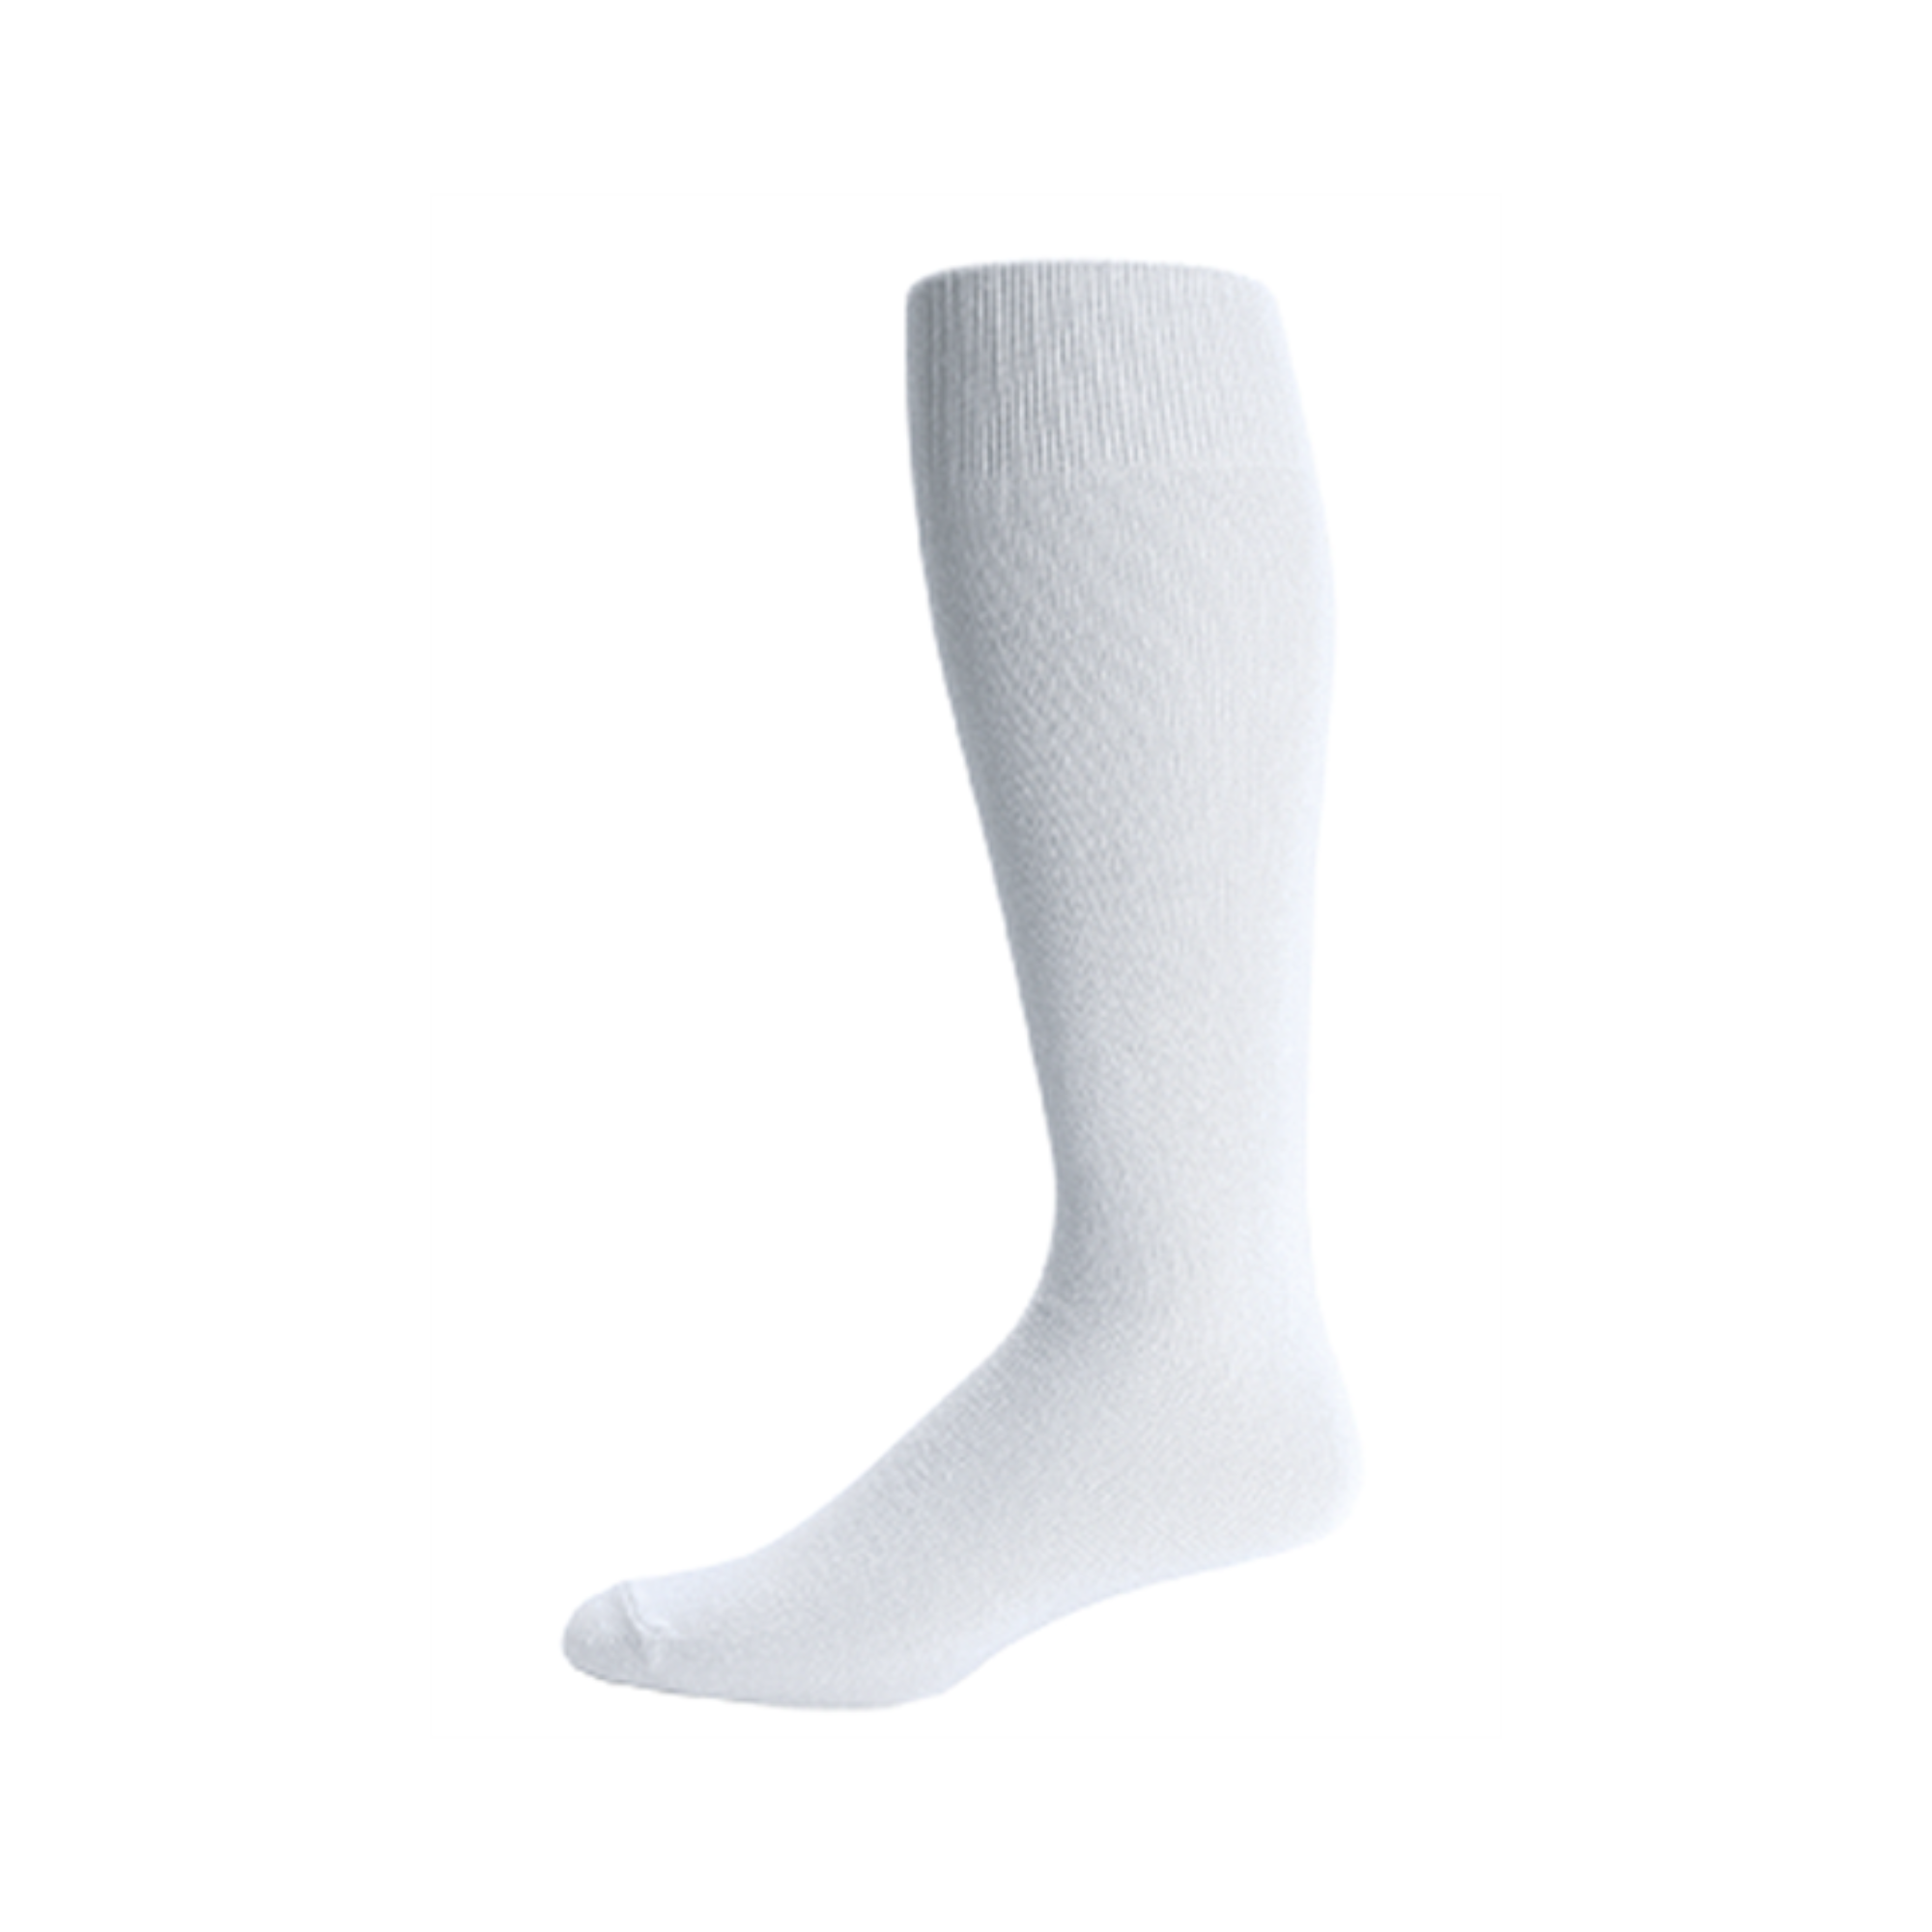 Pro Feet Sanitary Over-the-Calf Tube Sock